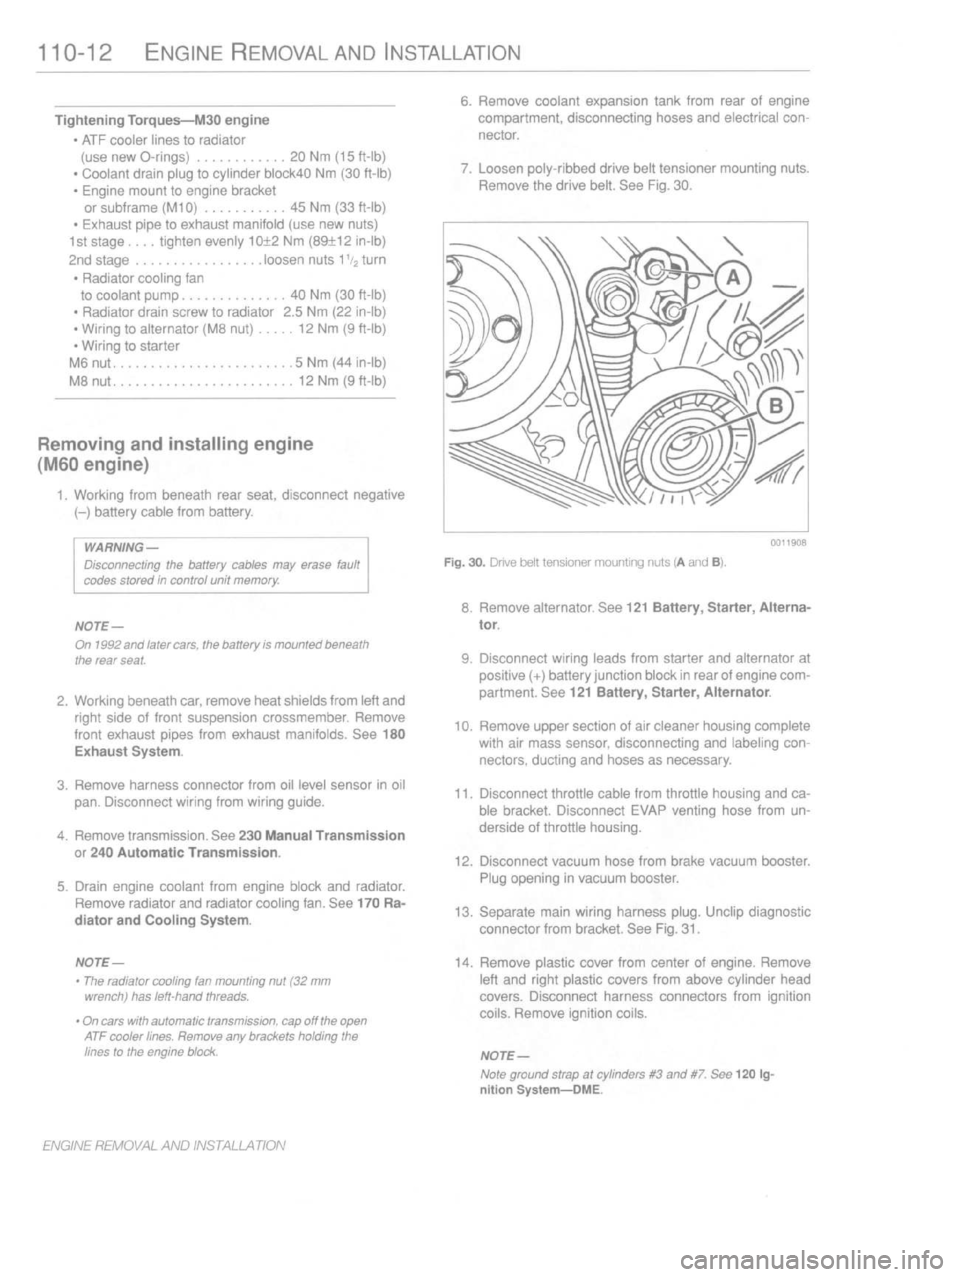 BMW 318i 1993 E36 Repair Manual 